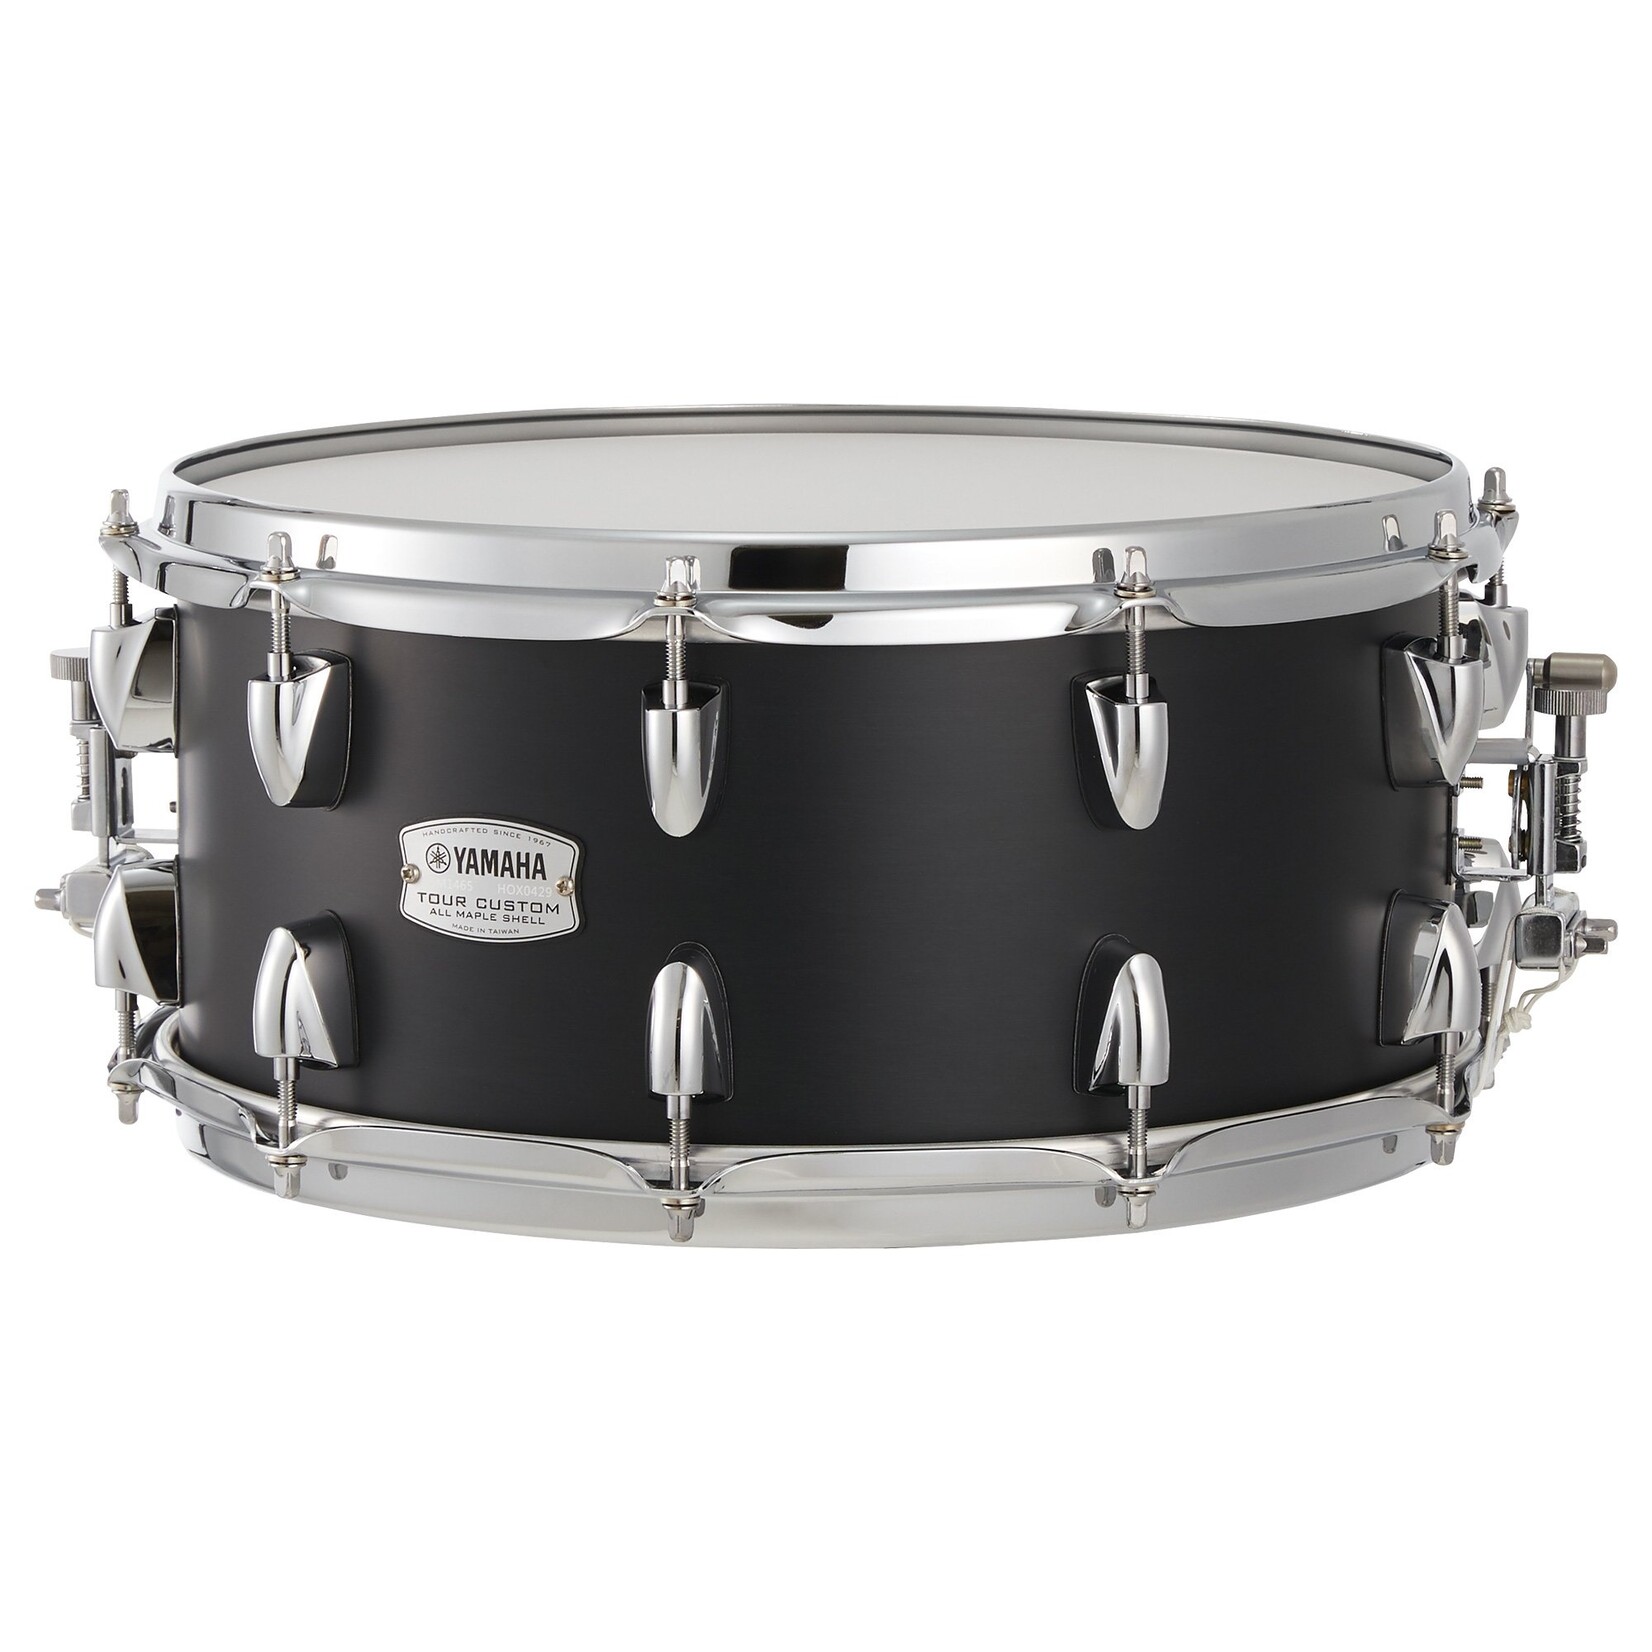 Yamaha Yamaha 6.5x14 Tour Custom Snare Drum - "Licorice Satin"